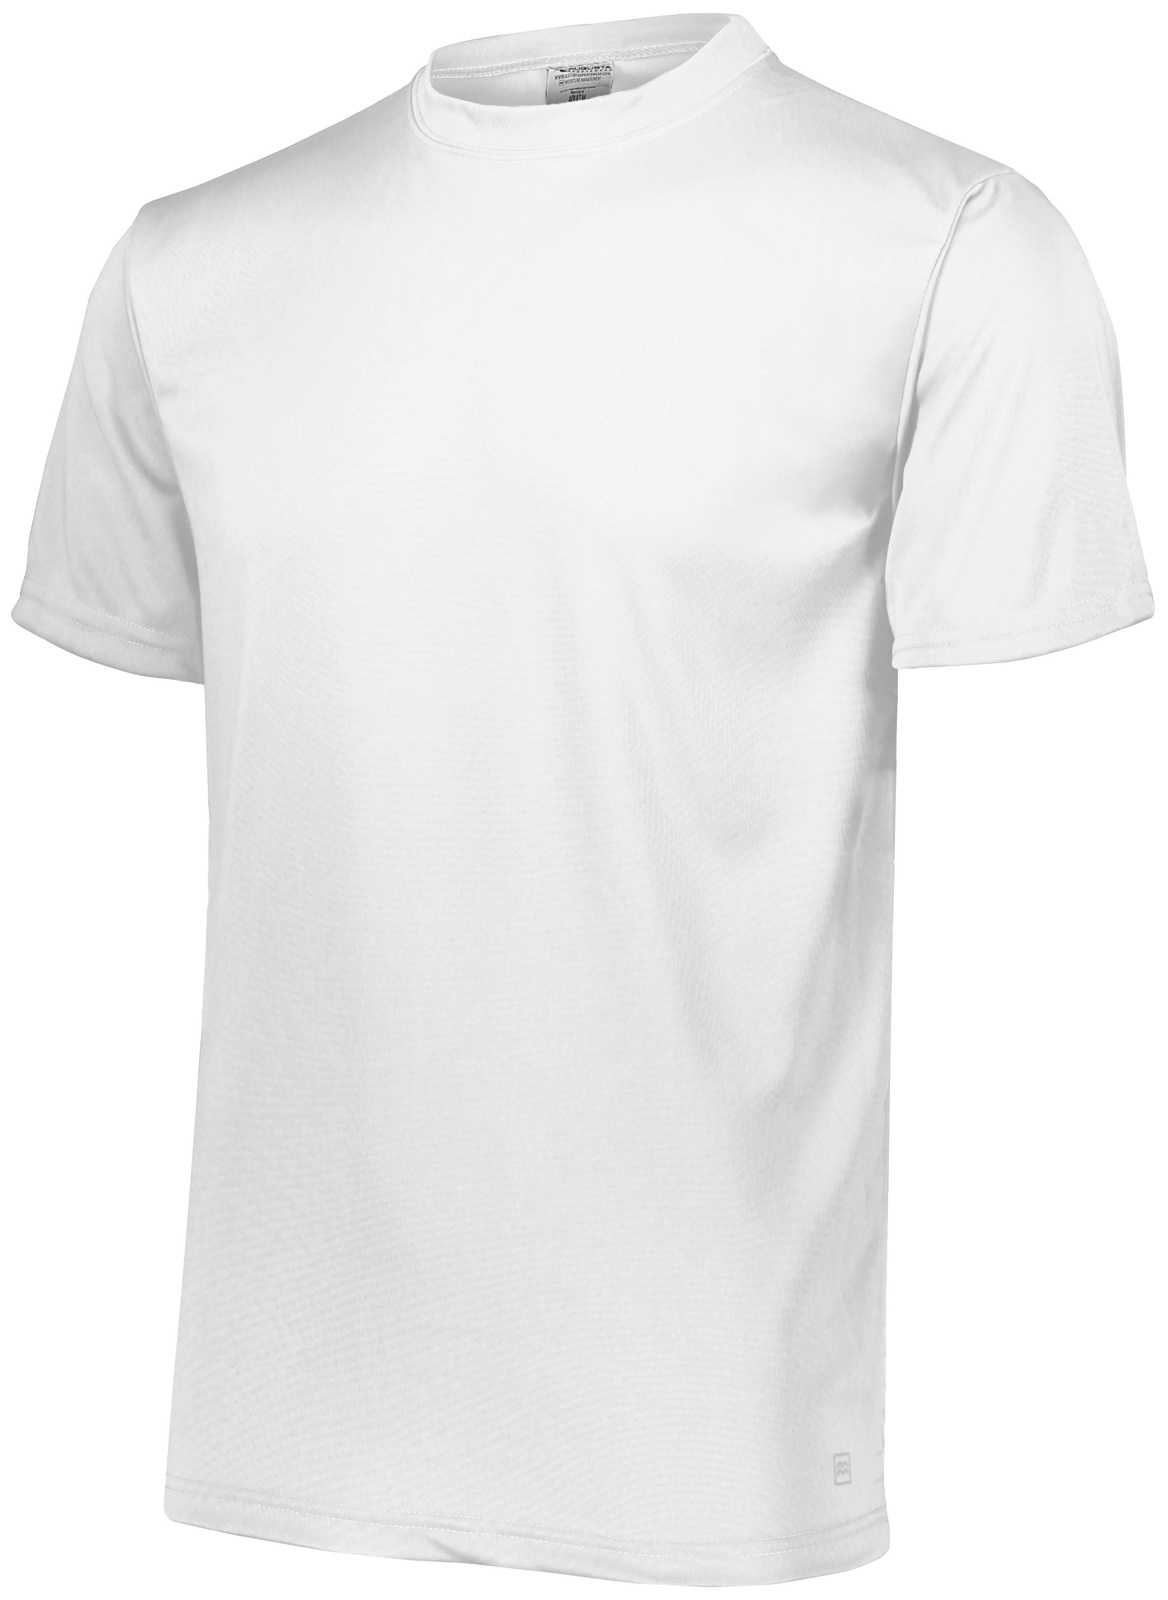 Augusta 790 NexGen Wicking T-Shirt - White - HIT a Double